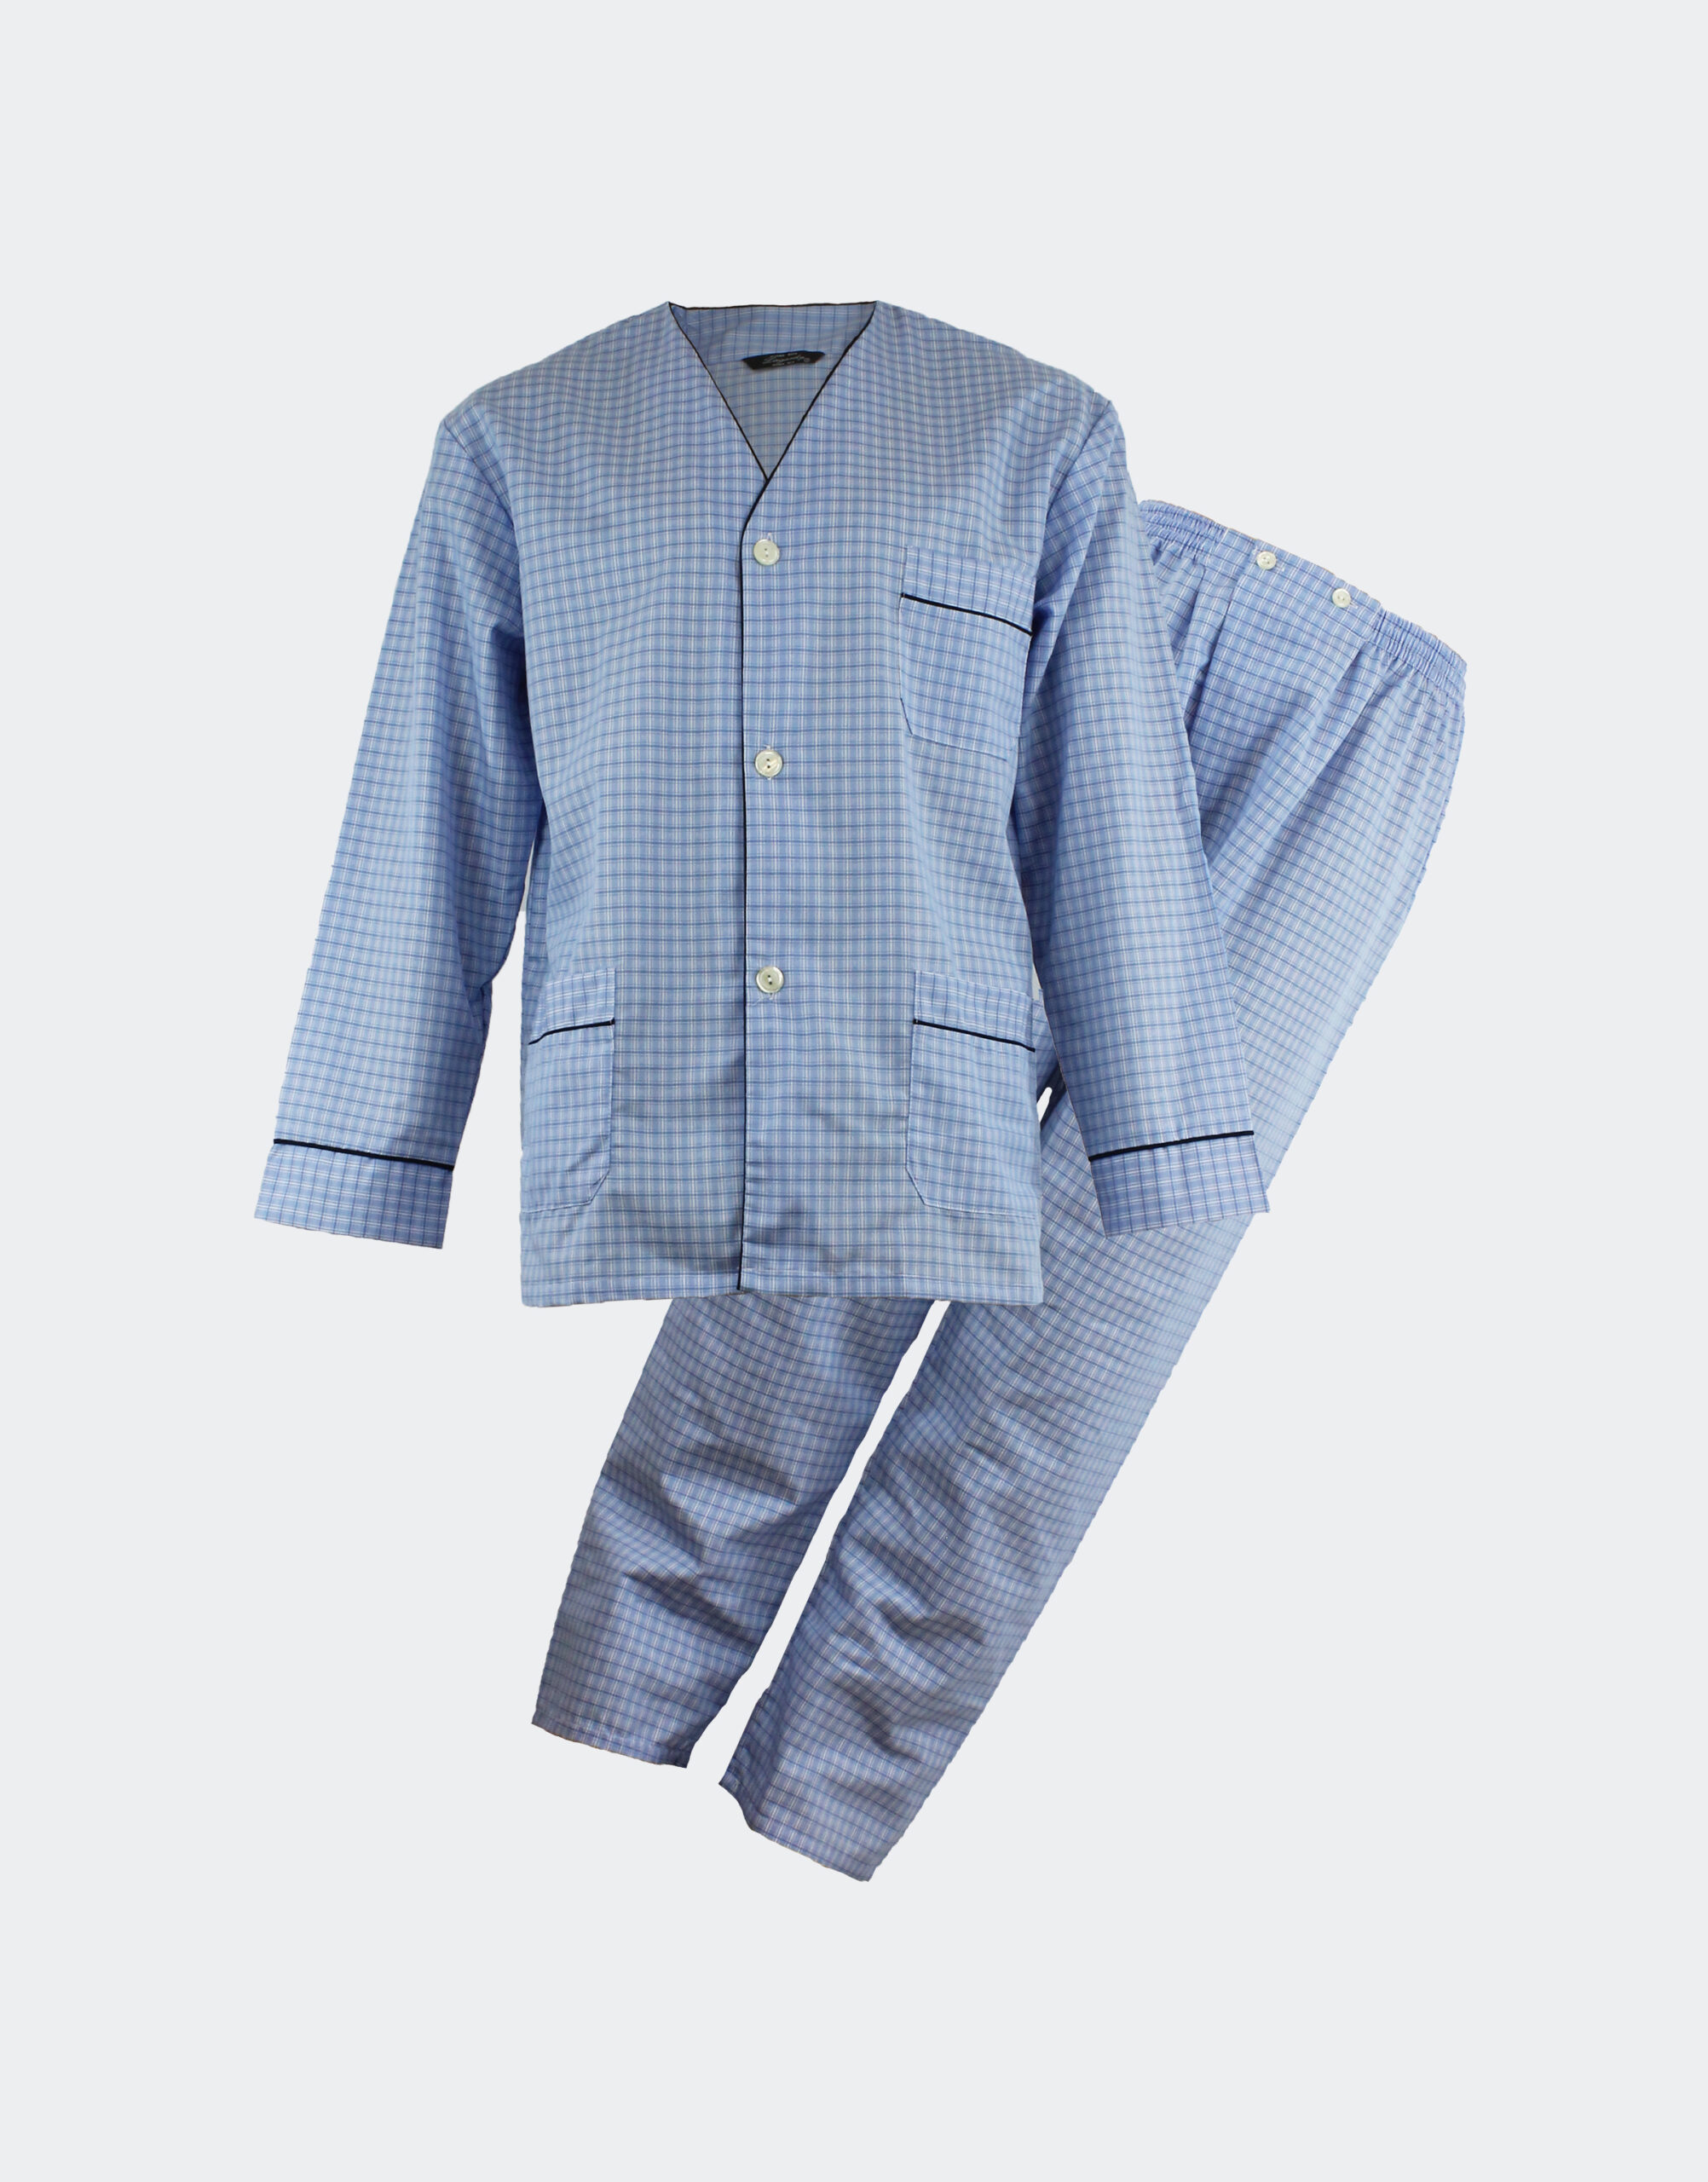 sistema caminar liebre Pijama hombre tela sin cuello en cuadritos azules | Casa Indalesi